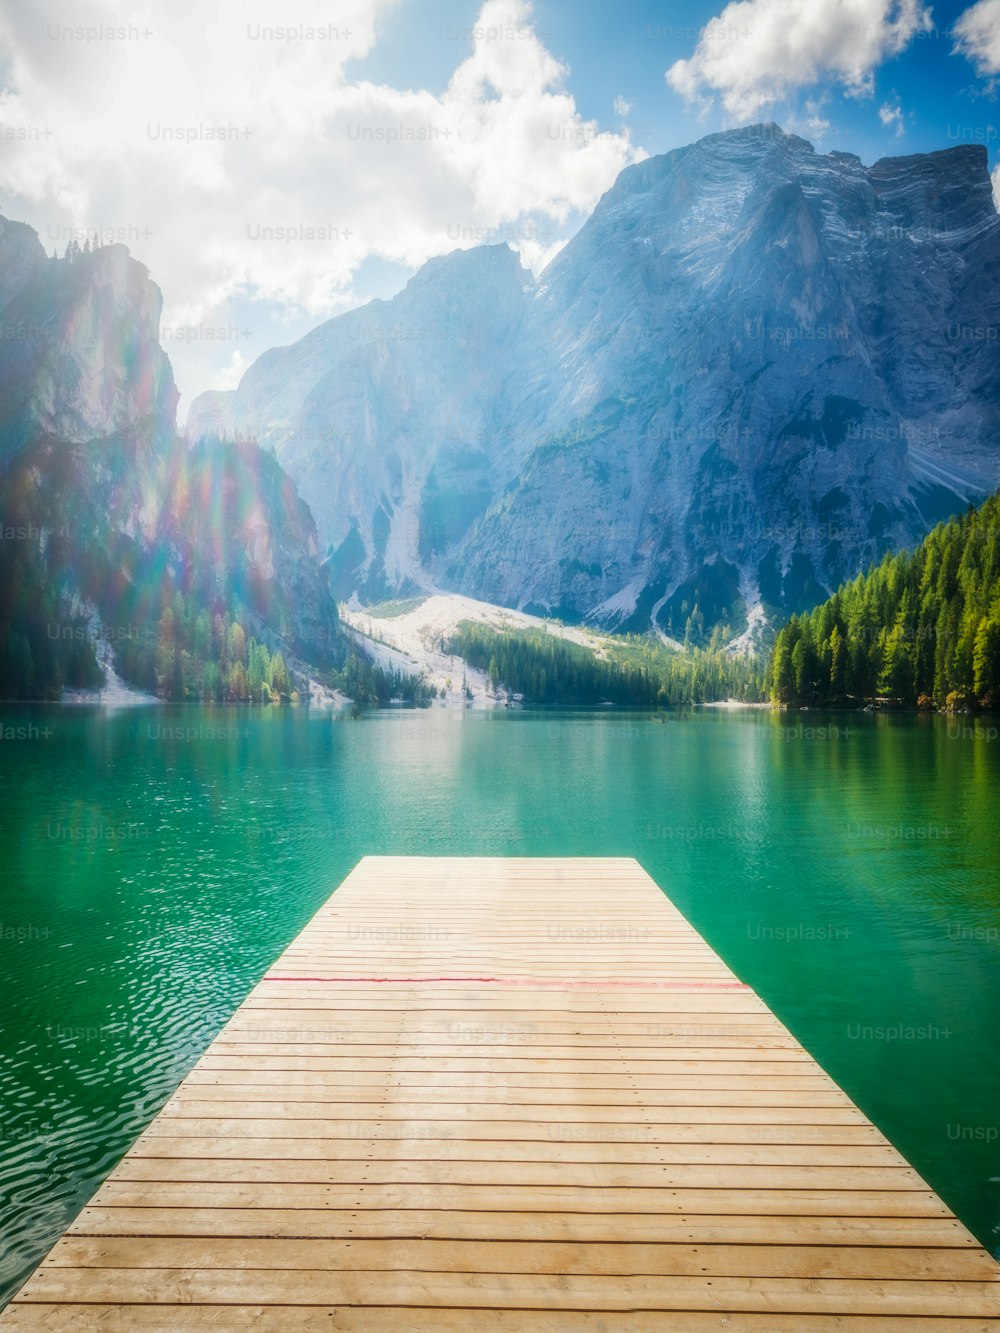 Lago di Braies nelle montagne dolomitiche Seekofel sullo sfondo, Alto Adige, Italia. Il Lago di Braies è conosciuto anche come Lago di Braies. Il lago è circondato dalle montagne che si specchiano nell'acqua.